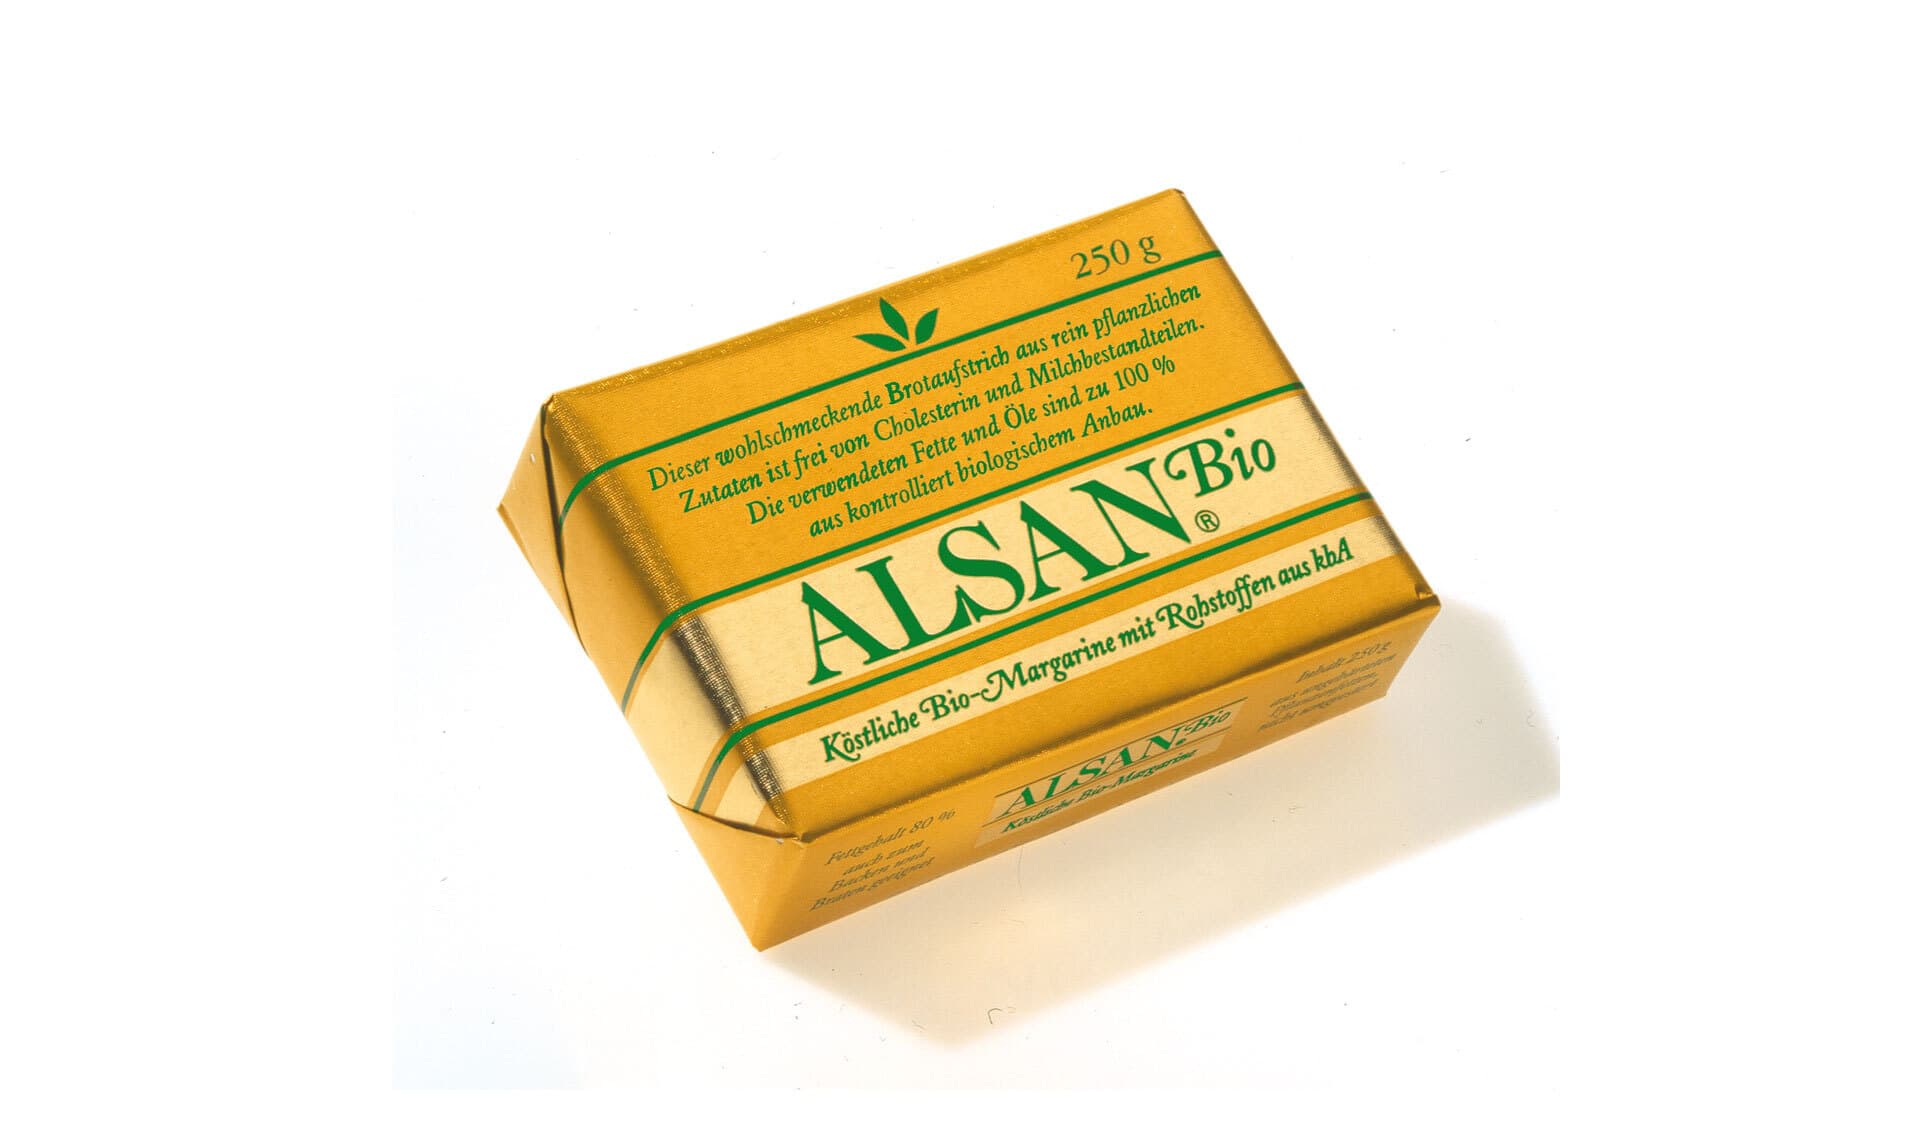 Alsan Bio Margarine